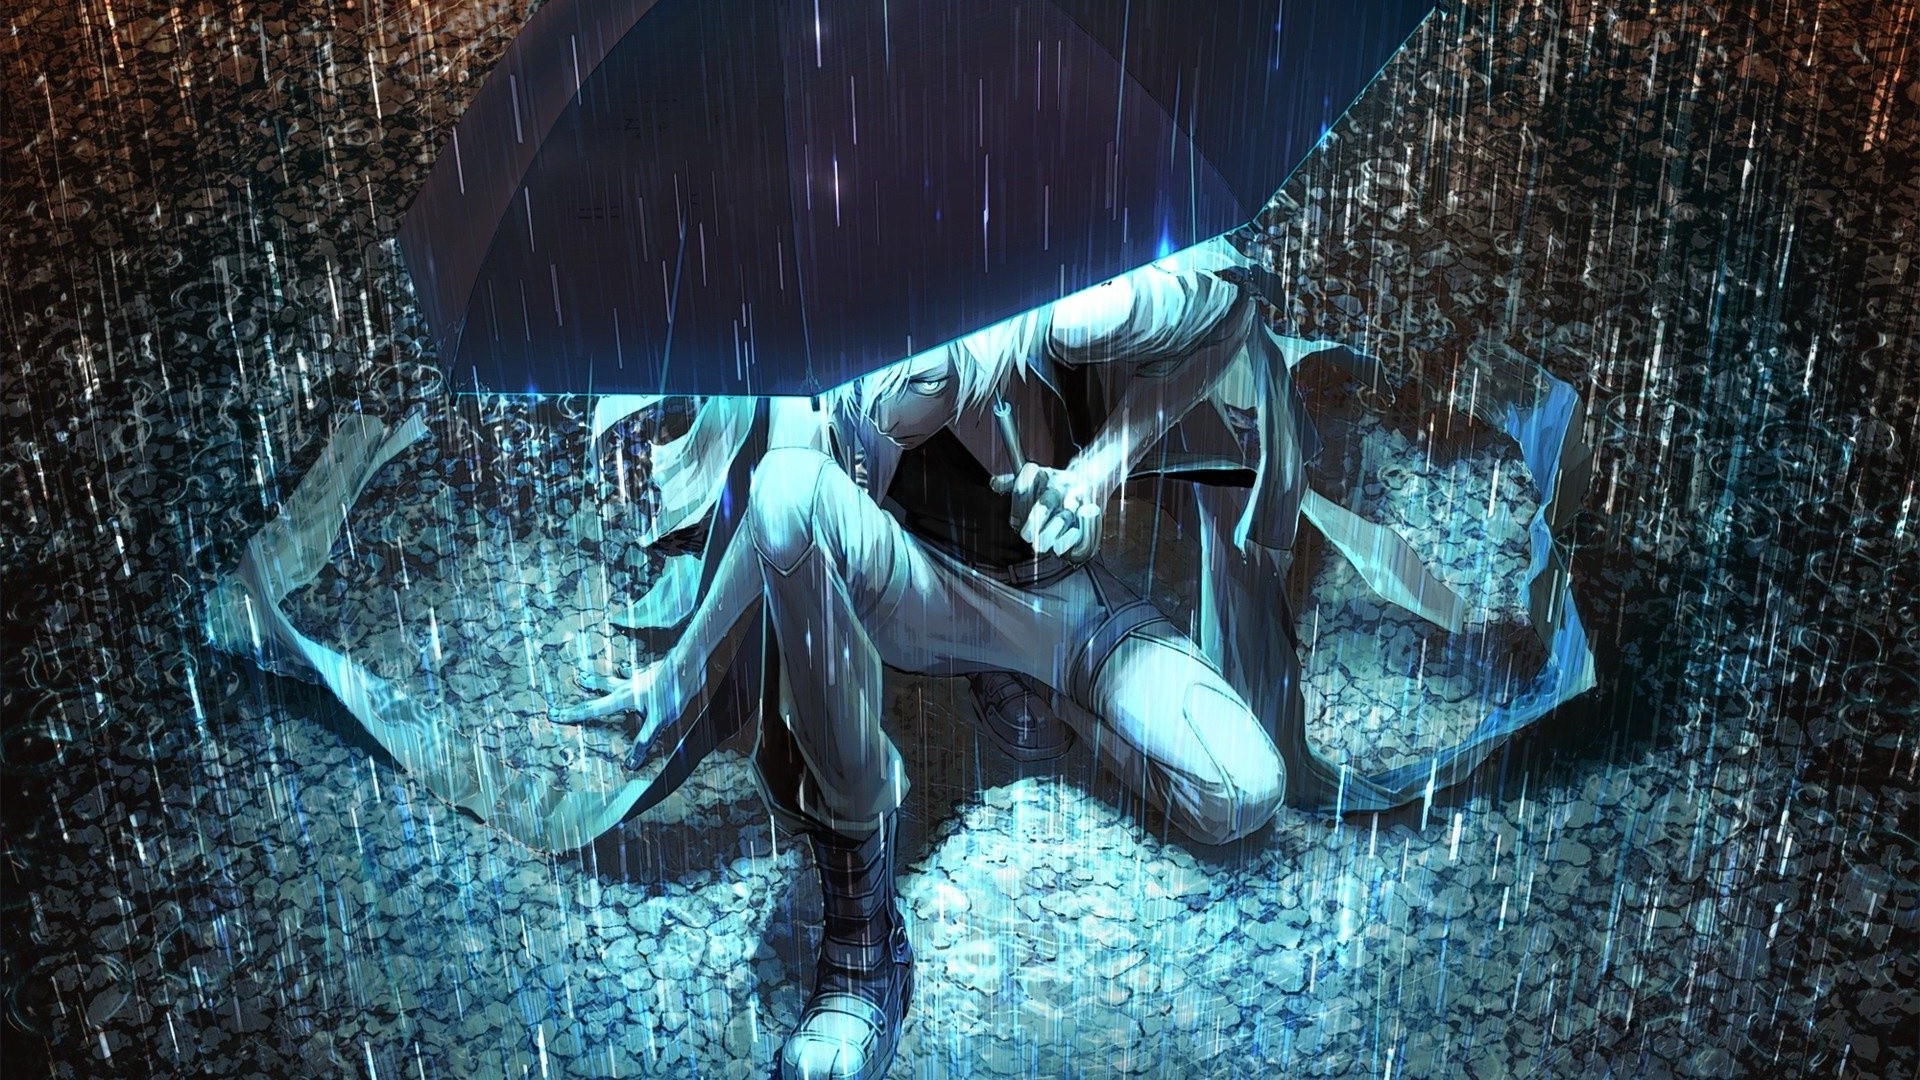 lluvia fondo de pantalla hd para móvil,cg artwork,arte,hombre murciélago,personaje de ficción,ilustración